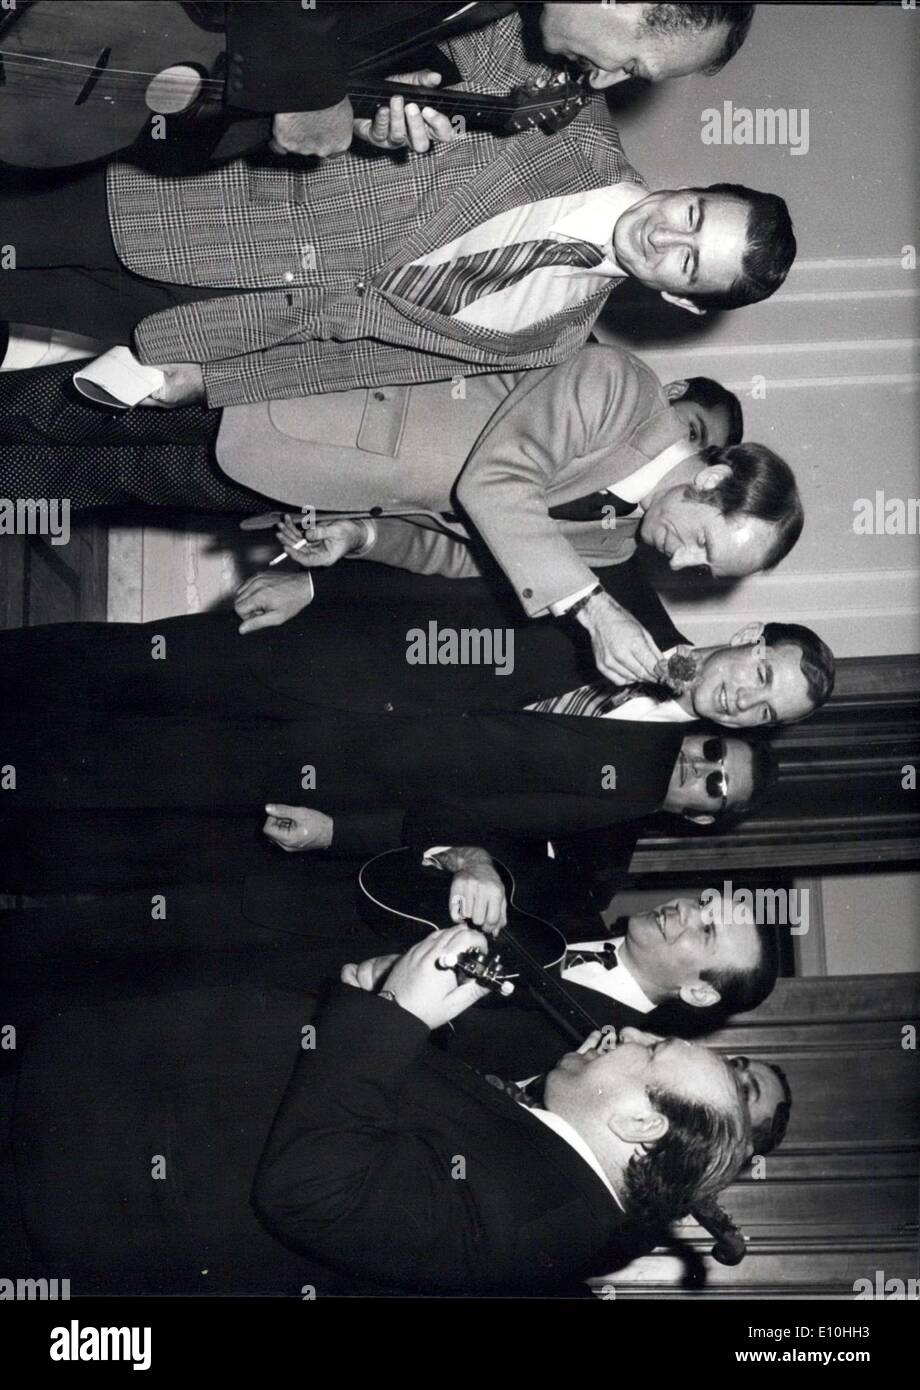 27. November 1972 - Apollo -15-Astronauten besuchen Jugoslawien: amerikanische Astronauten David Scott, Alfred Warren und James Irvin, der Besatzung der Apollo -15-Moonflight, angekommen in Jugoslawien am 24. Januar für einen siebten Tagesbesuch. Während in Belgrad Astronauten traf sich mit jugoslawischen Staatsmänner, Sitzungen mit jugoslawischen Wissenschaftlern und Studenten, und für einen Abend waren Ehrengast des Belgrad International Film Festival '' Fest 72''. Ihre 15-minütige Film '' der Spaziergang auf dem Mond '' innerhalb gezeigt wurde das Festival-Programm Stockfoto